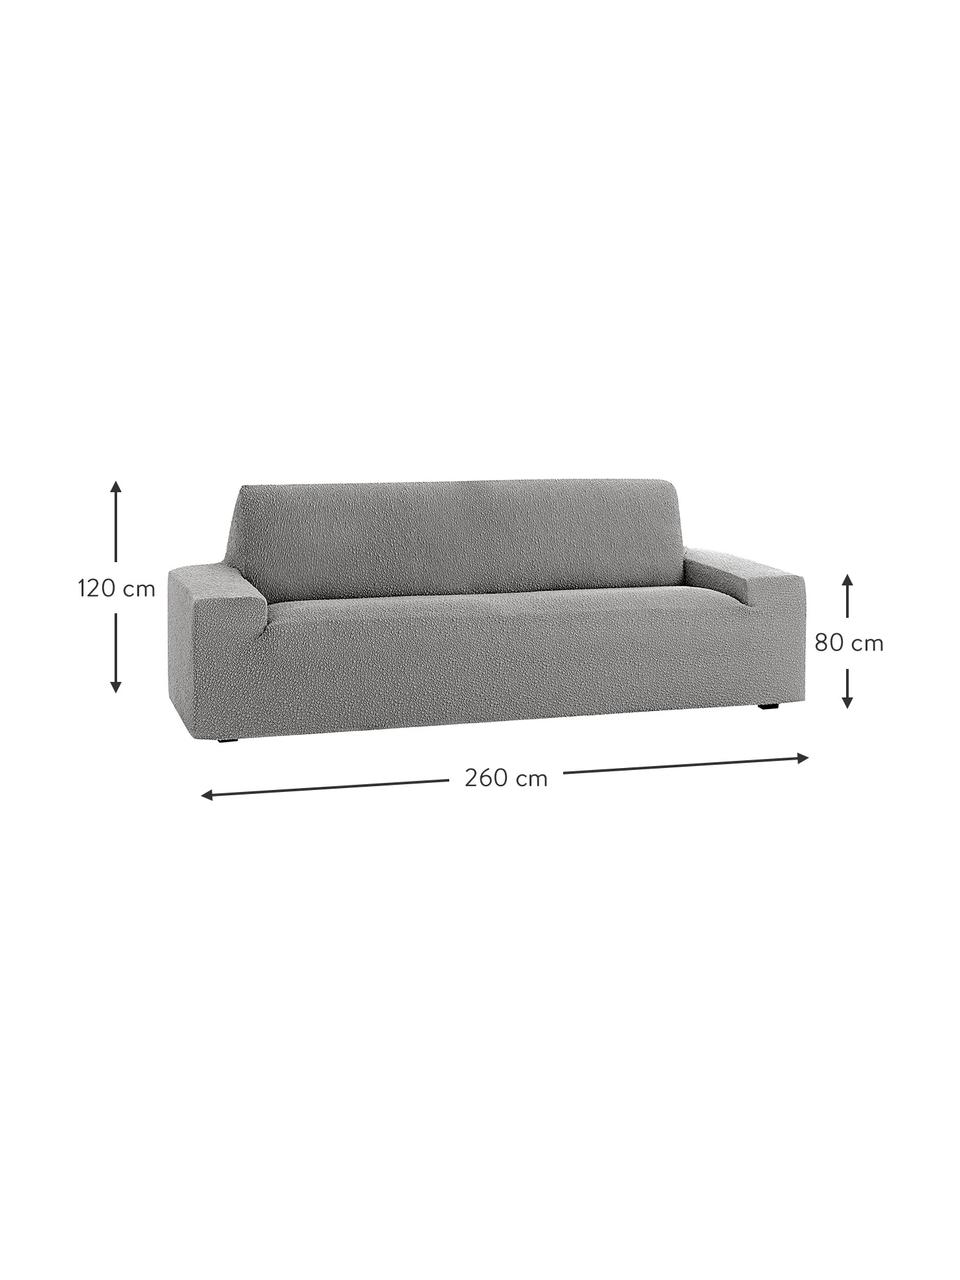 Pokrowiec na sofę Roc, 55% poliester, 35% bawełna, 10% elastomer, Szary, S 260 x W 120 cm